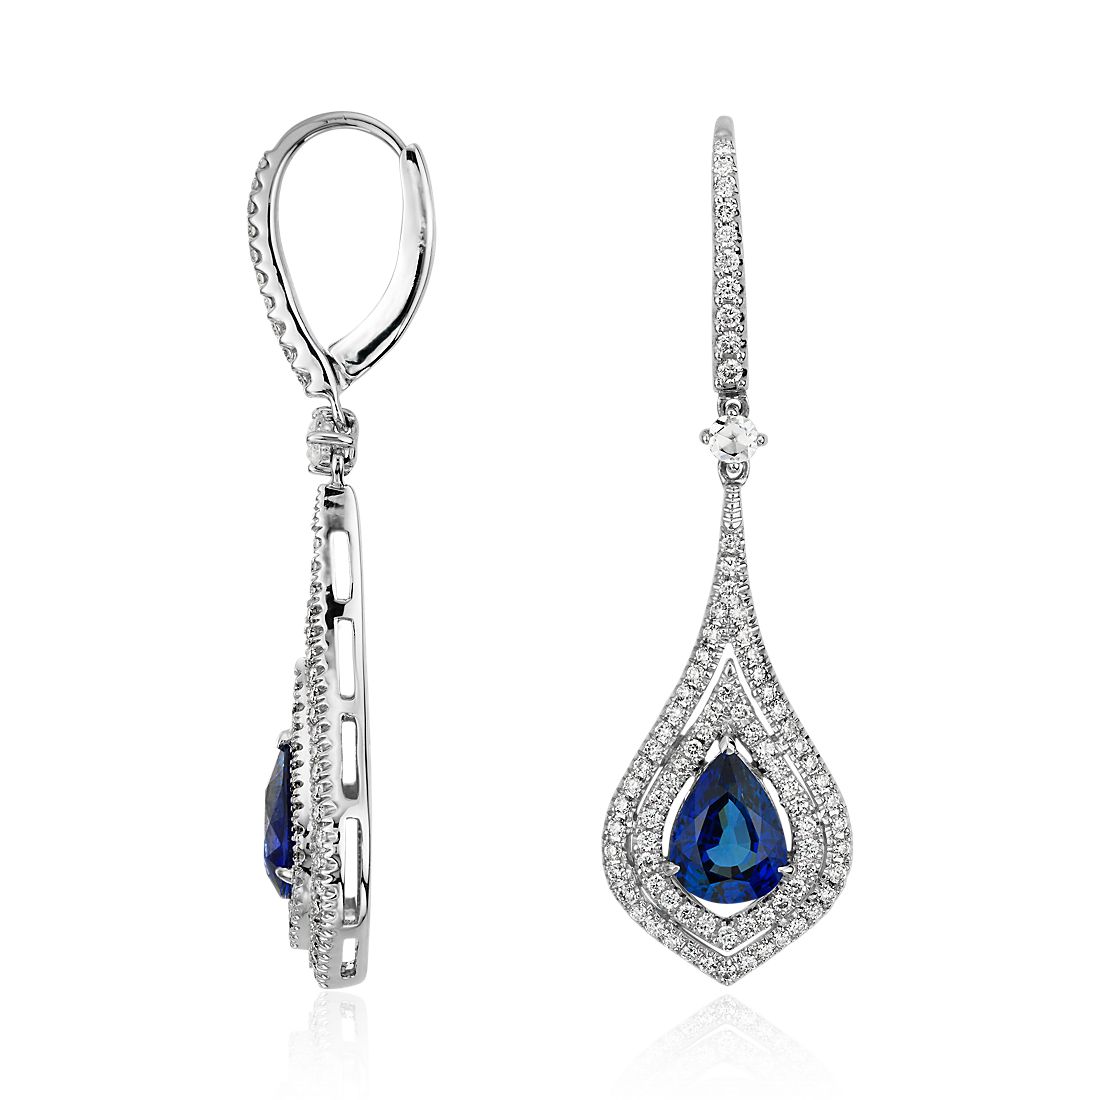 Pear Shape Sapphire Double Halo Diamond Drop Earrings in 18k White Gold (8x6mm)